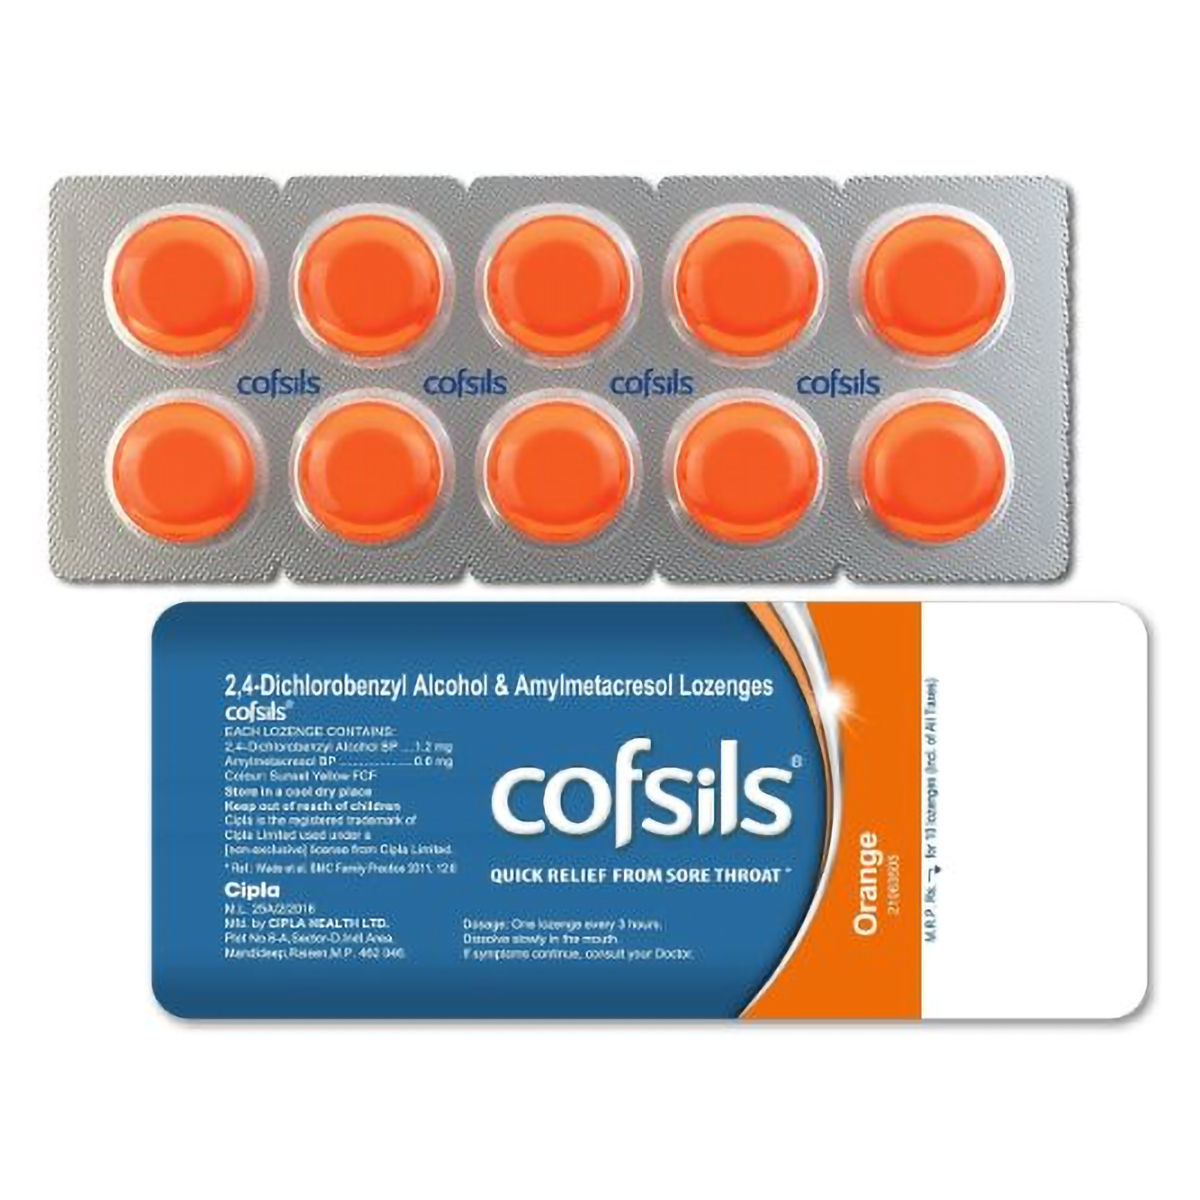 Buy Cofsils Orange Flavour, 10 Lozenges Online